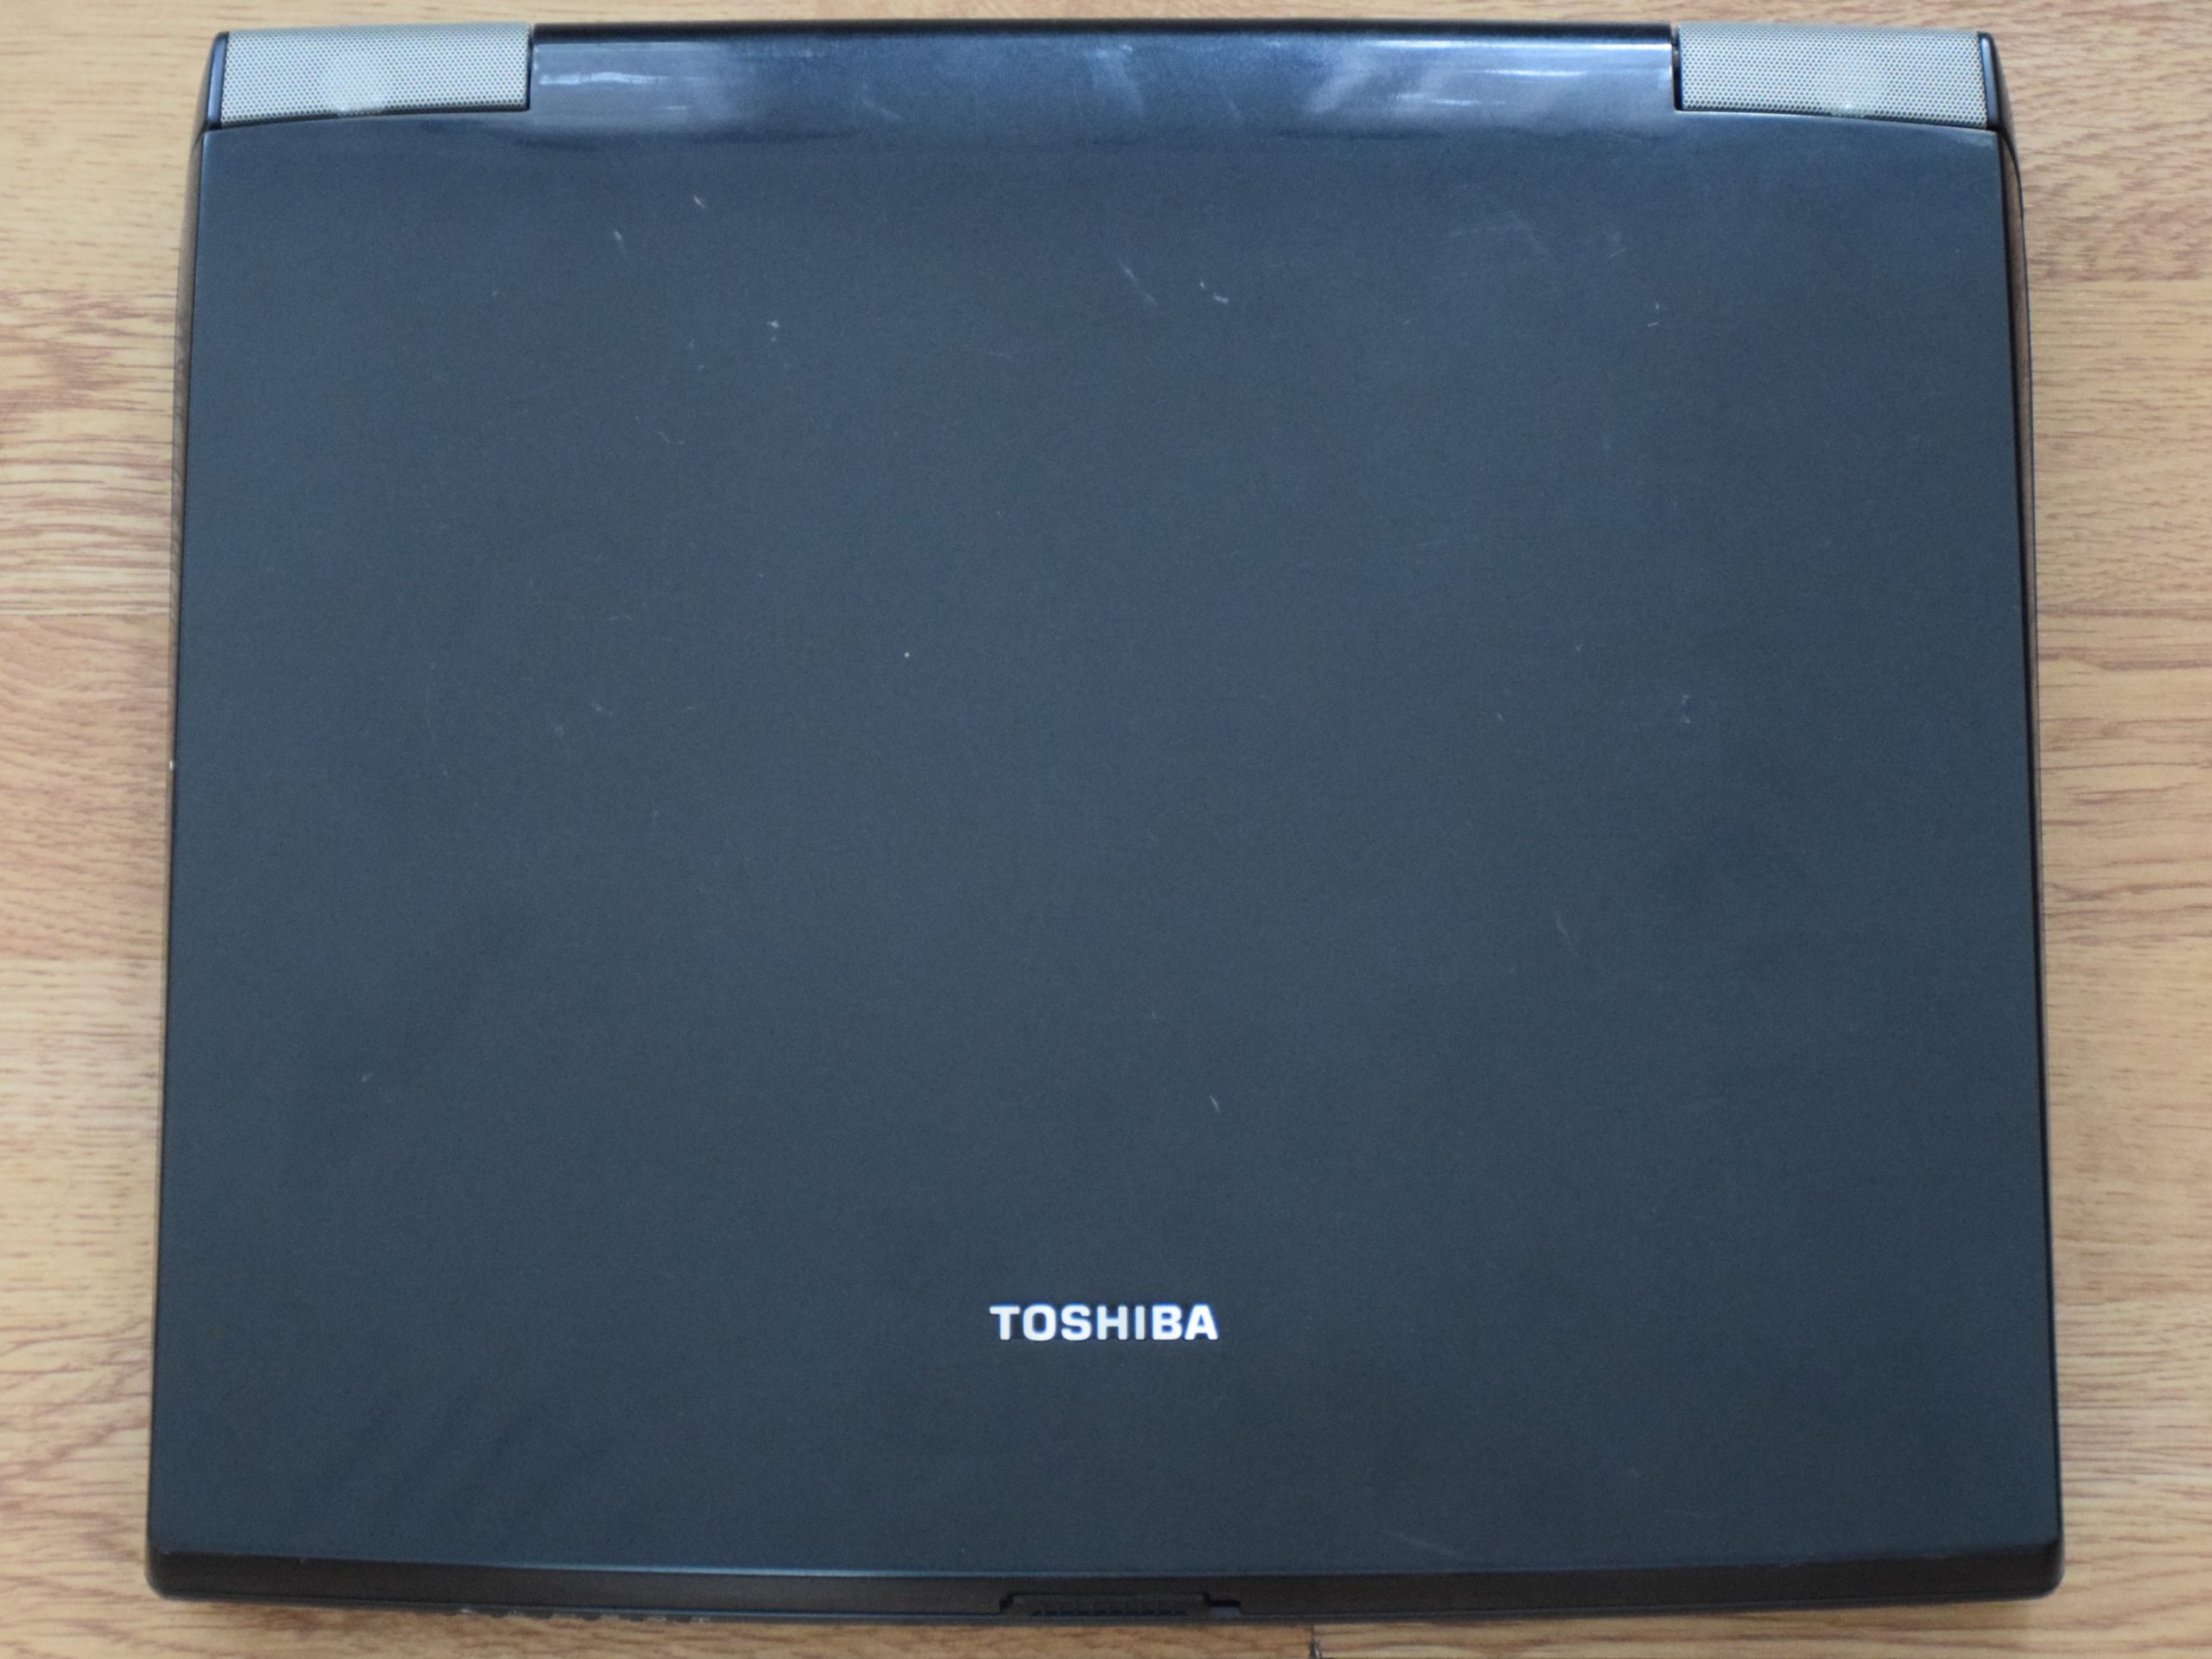 Toshiba Satellite Pro M10 - Dessus